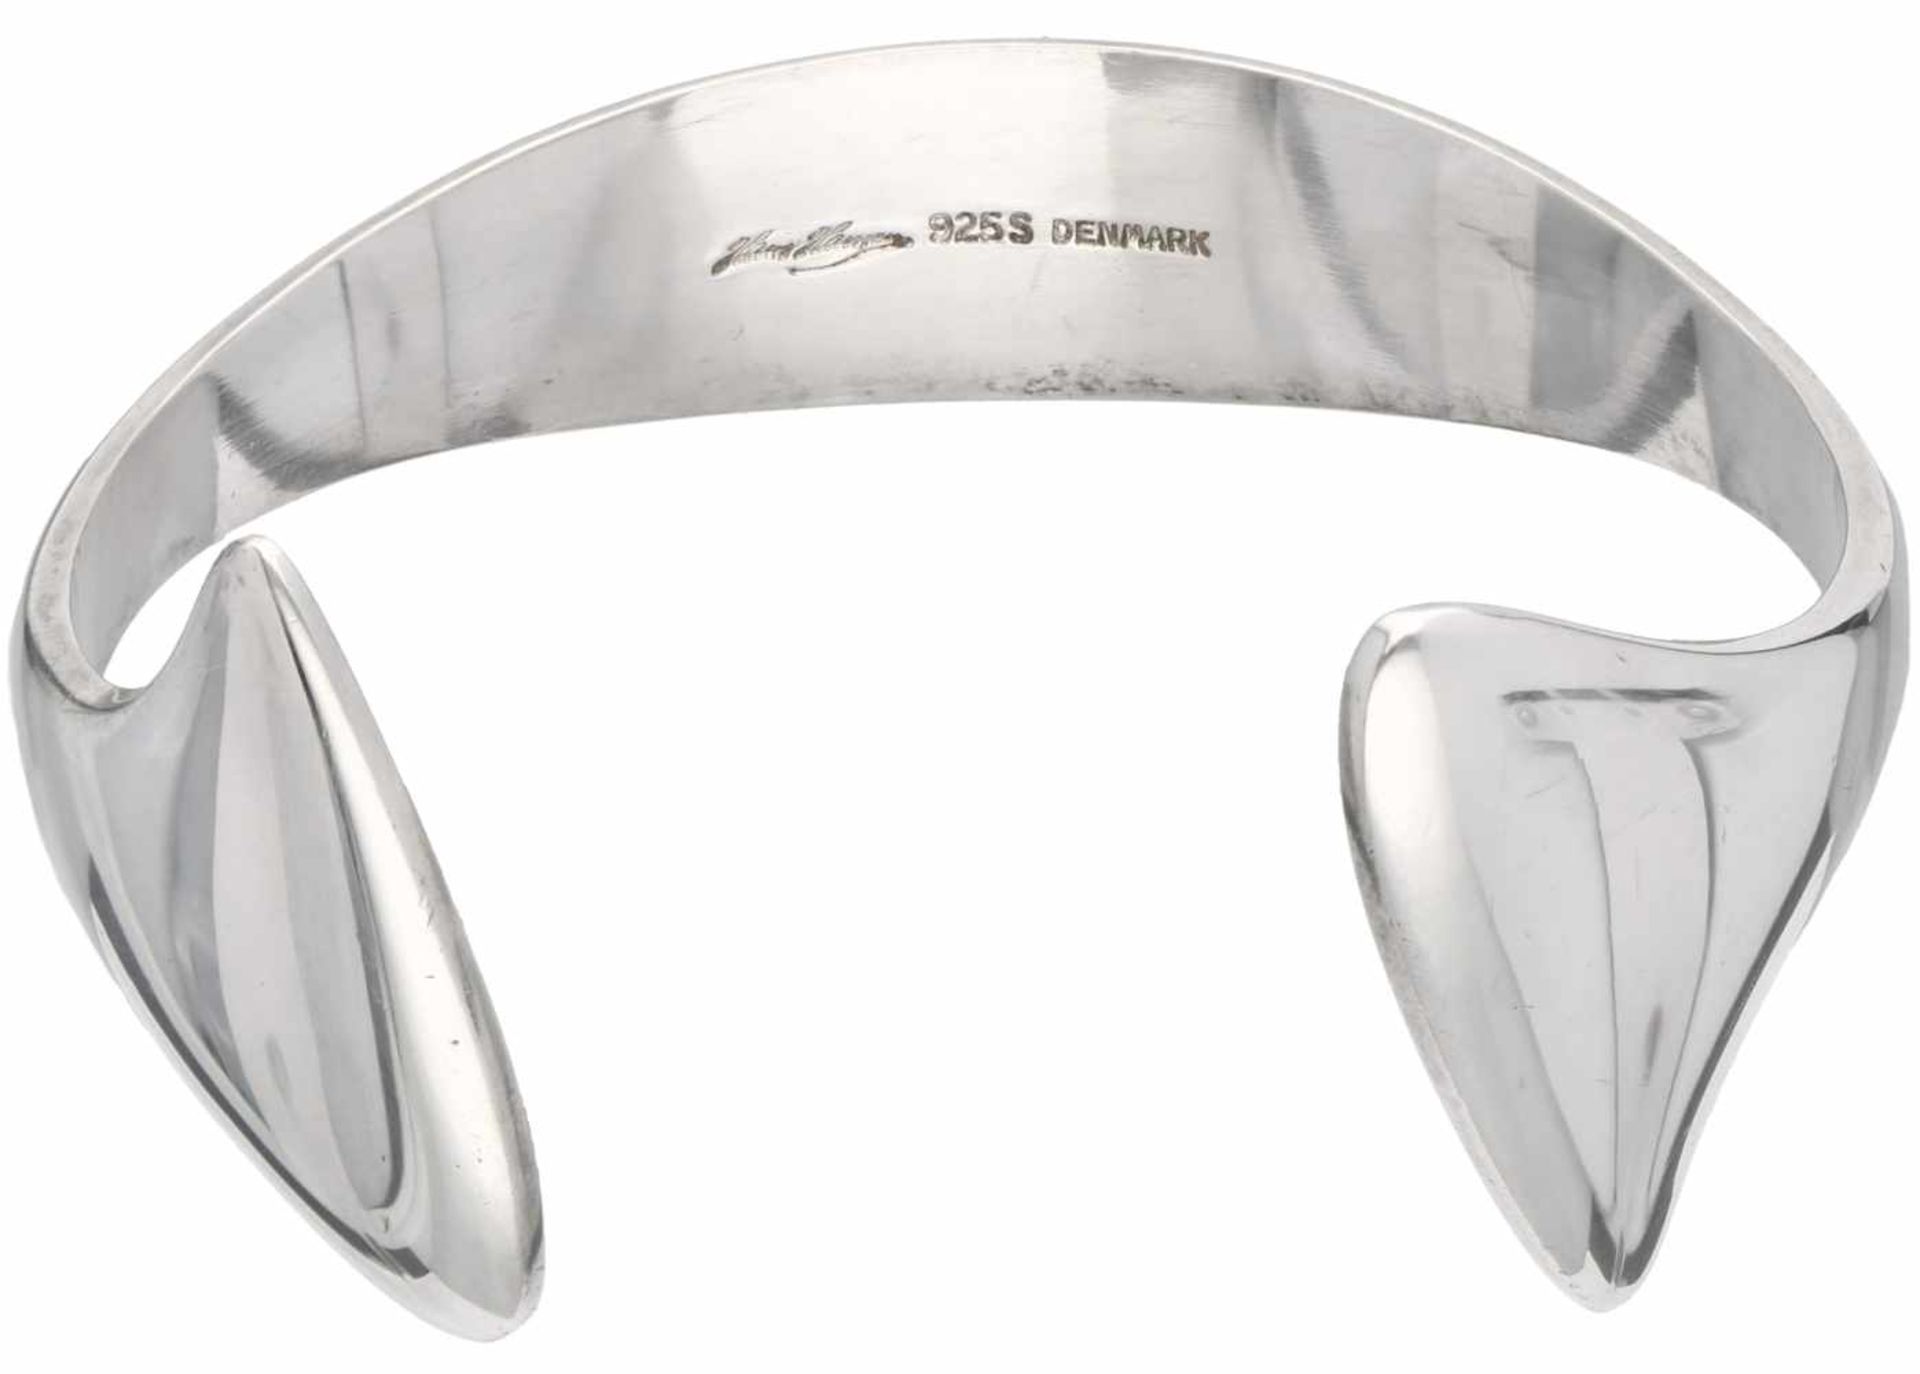 Hans Hansen Denmark bangle bracelet silver - 925/1000.